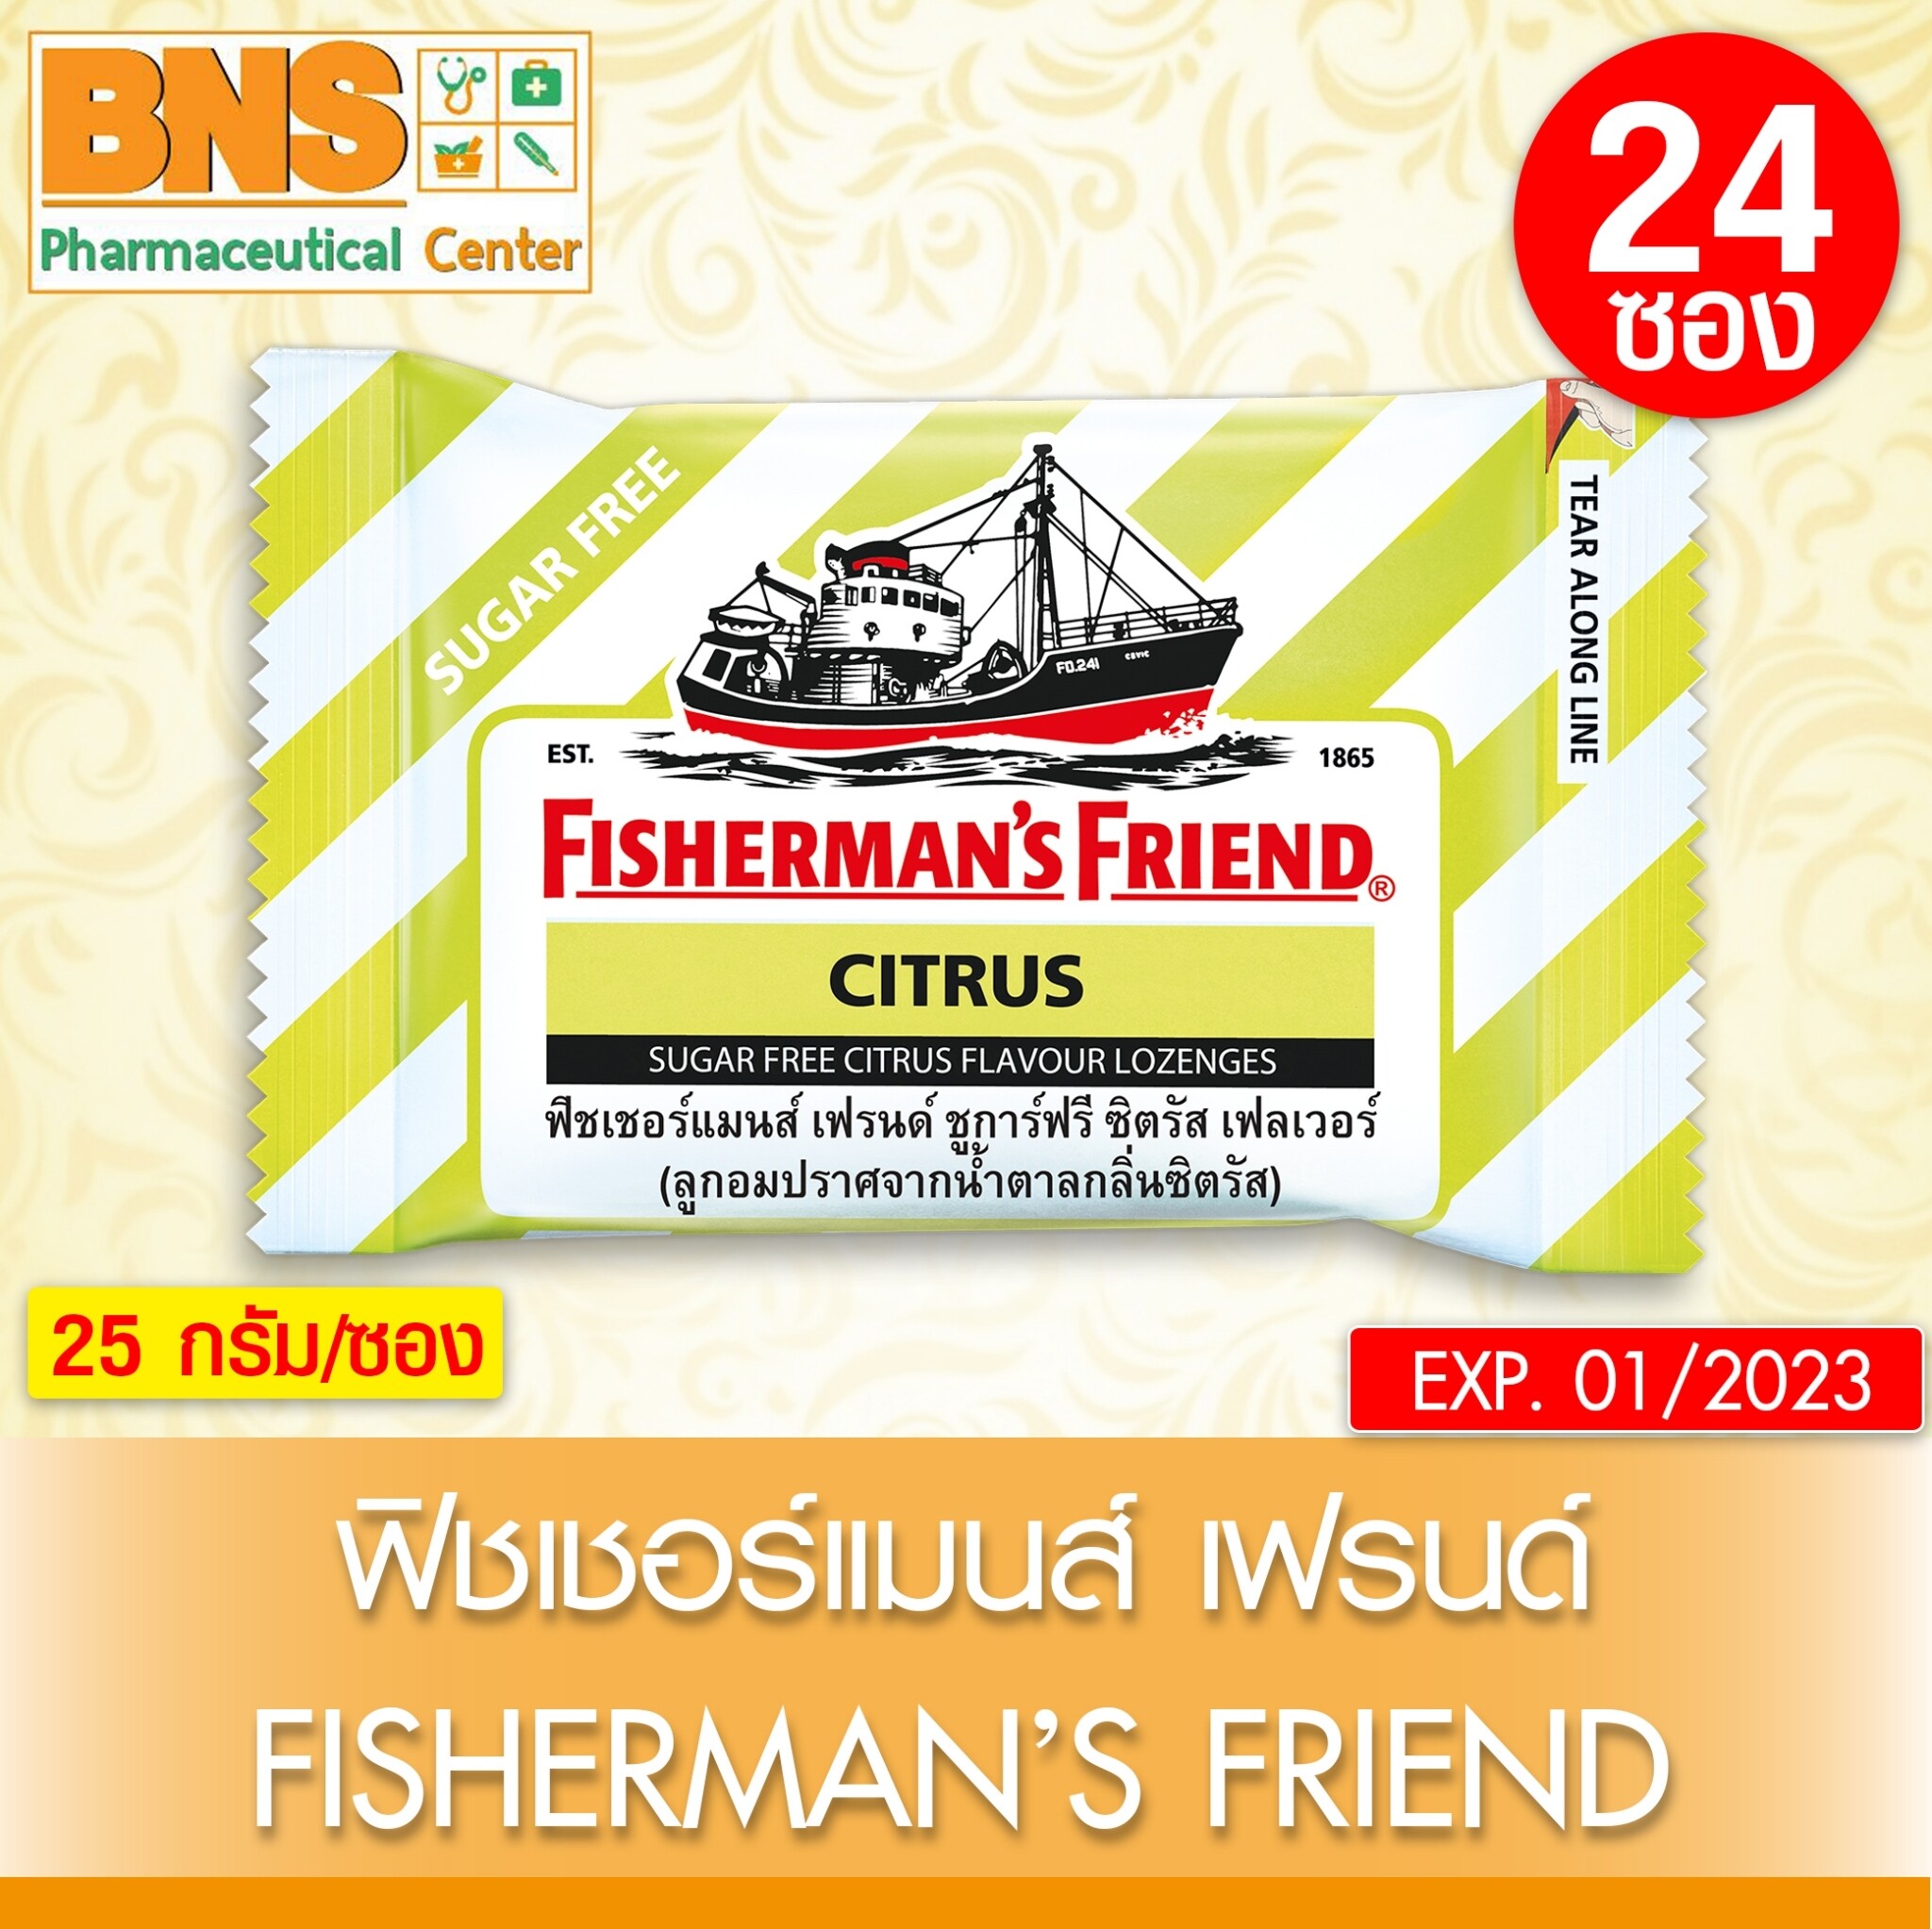 Fisherman's Friend CITRUS SUGAR FREE ฟิชเชอร์แมนส์ เฟรนด์ กลิ่นซิตรัส แบบไม่มีน้ำตาล ⚡ ( 1 กล่อง 24 ซอง)⚡ (ถูกที่สุด)(ของใหม่) By BNS